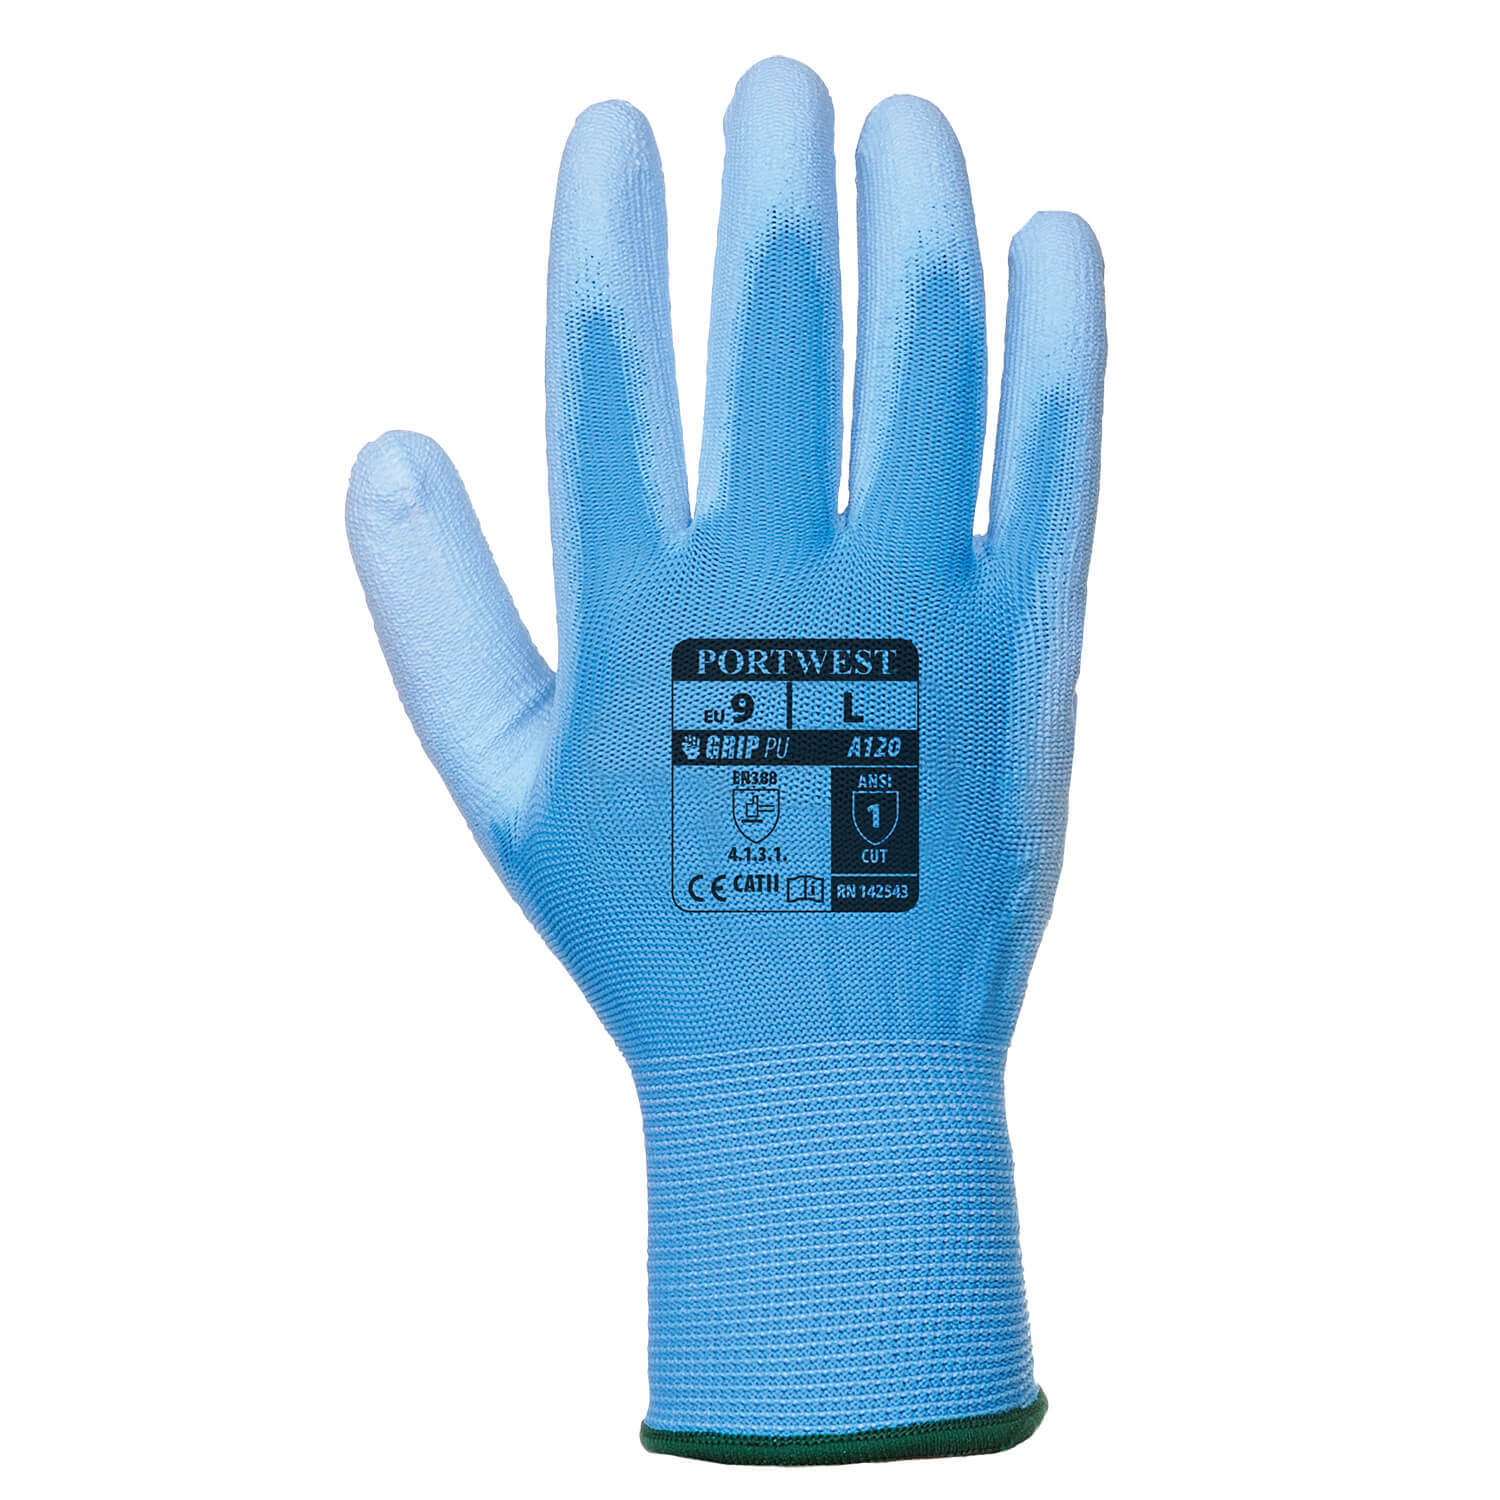 Image of Portwest PU Palm General Handling Grip Gloves Blue S